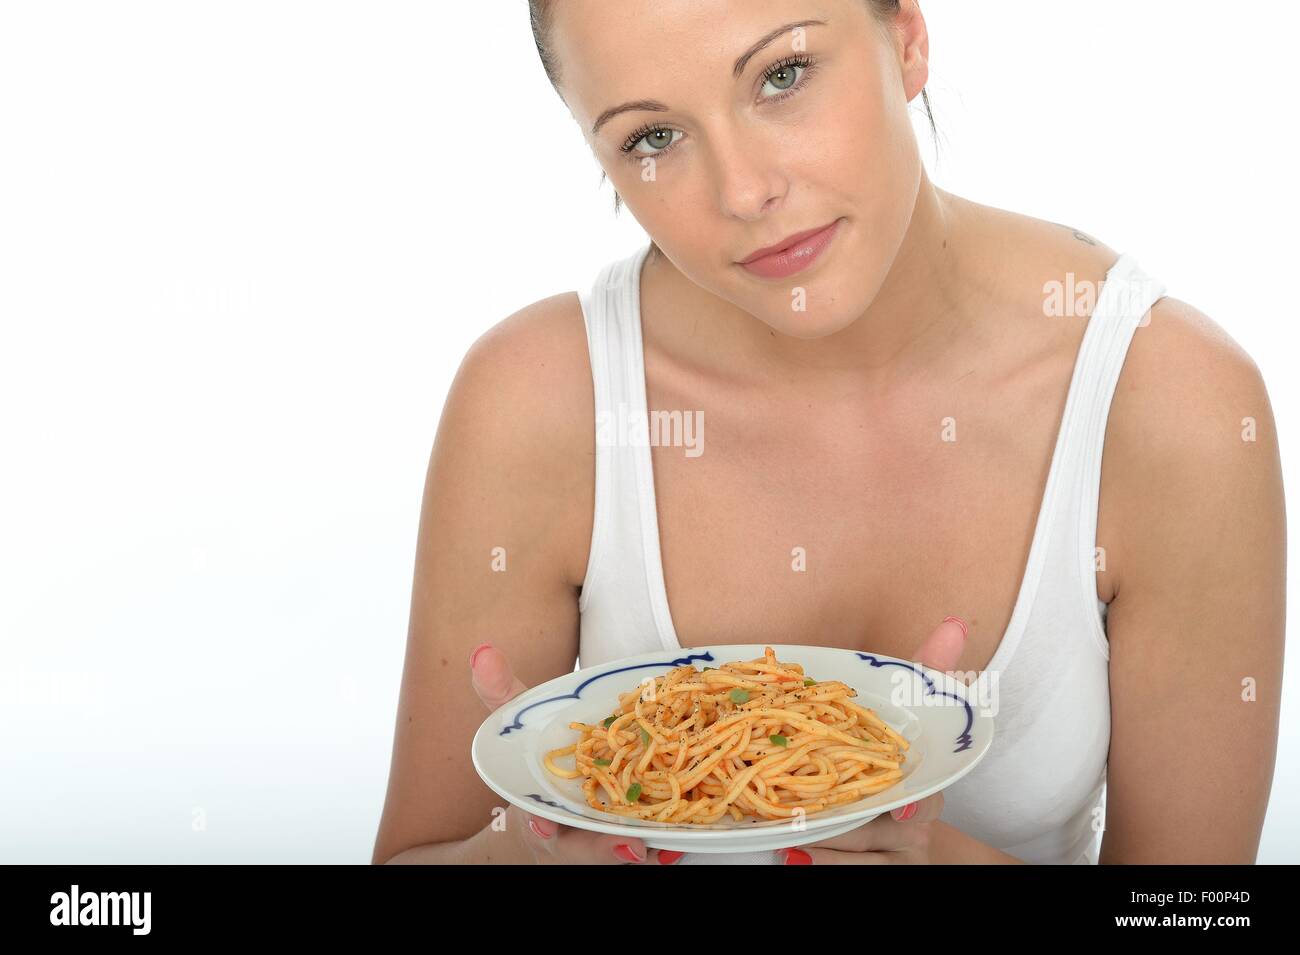 Zuversichtlich Positive junge Frau mit einer Platte des Italienischen mediterranen Stil Spaghetti Pasta in Tomatensauce Isoliert gegen einen weißen Hintergrund Stockfoto